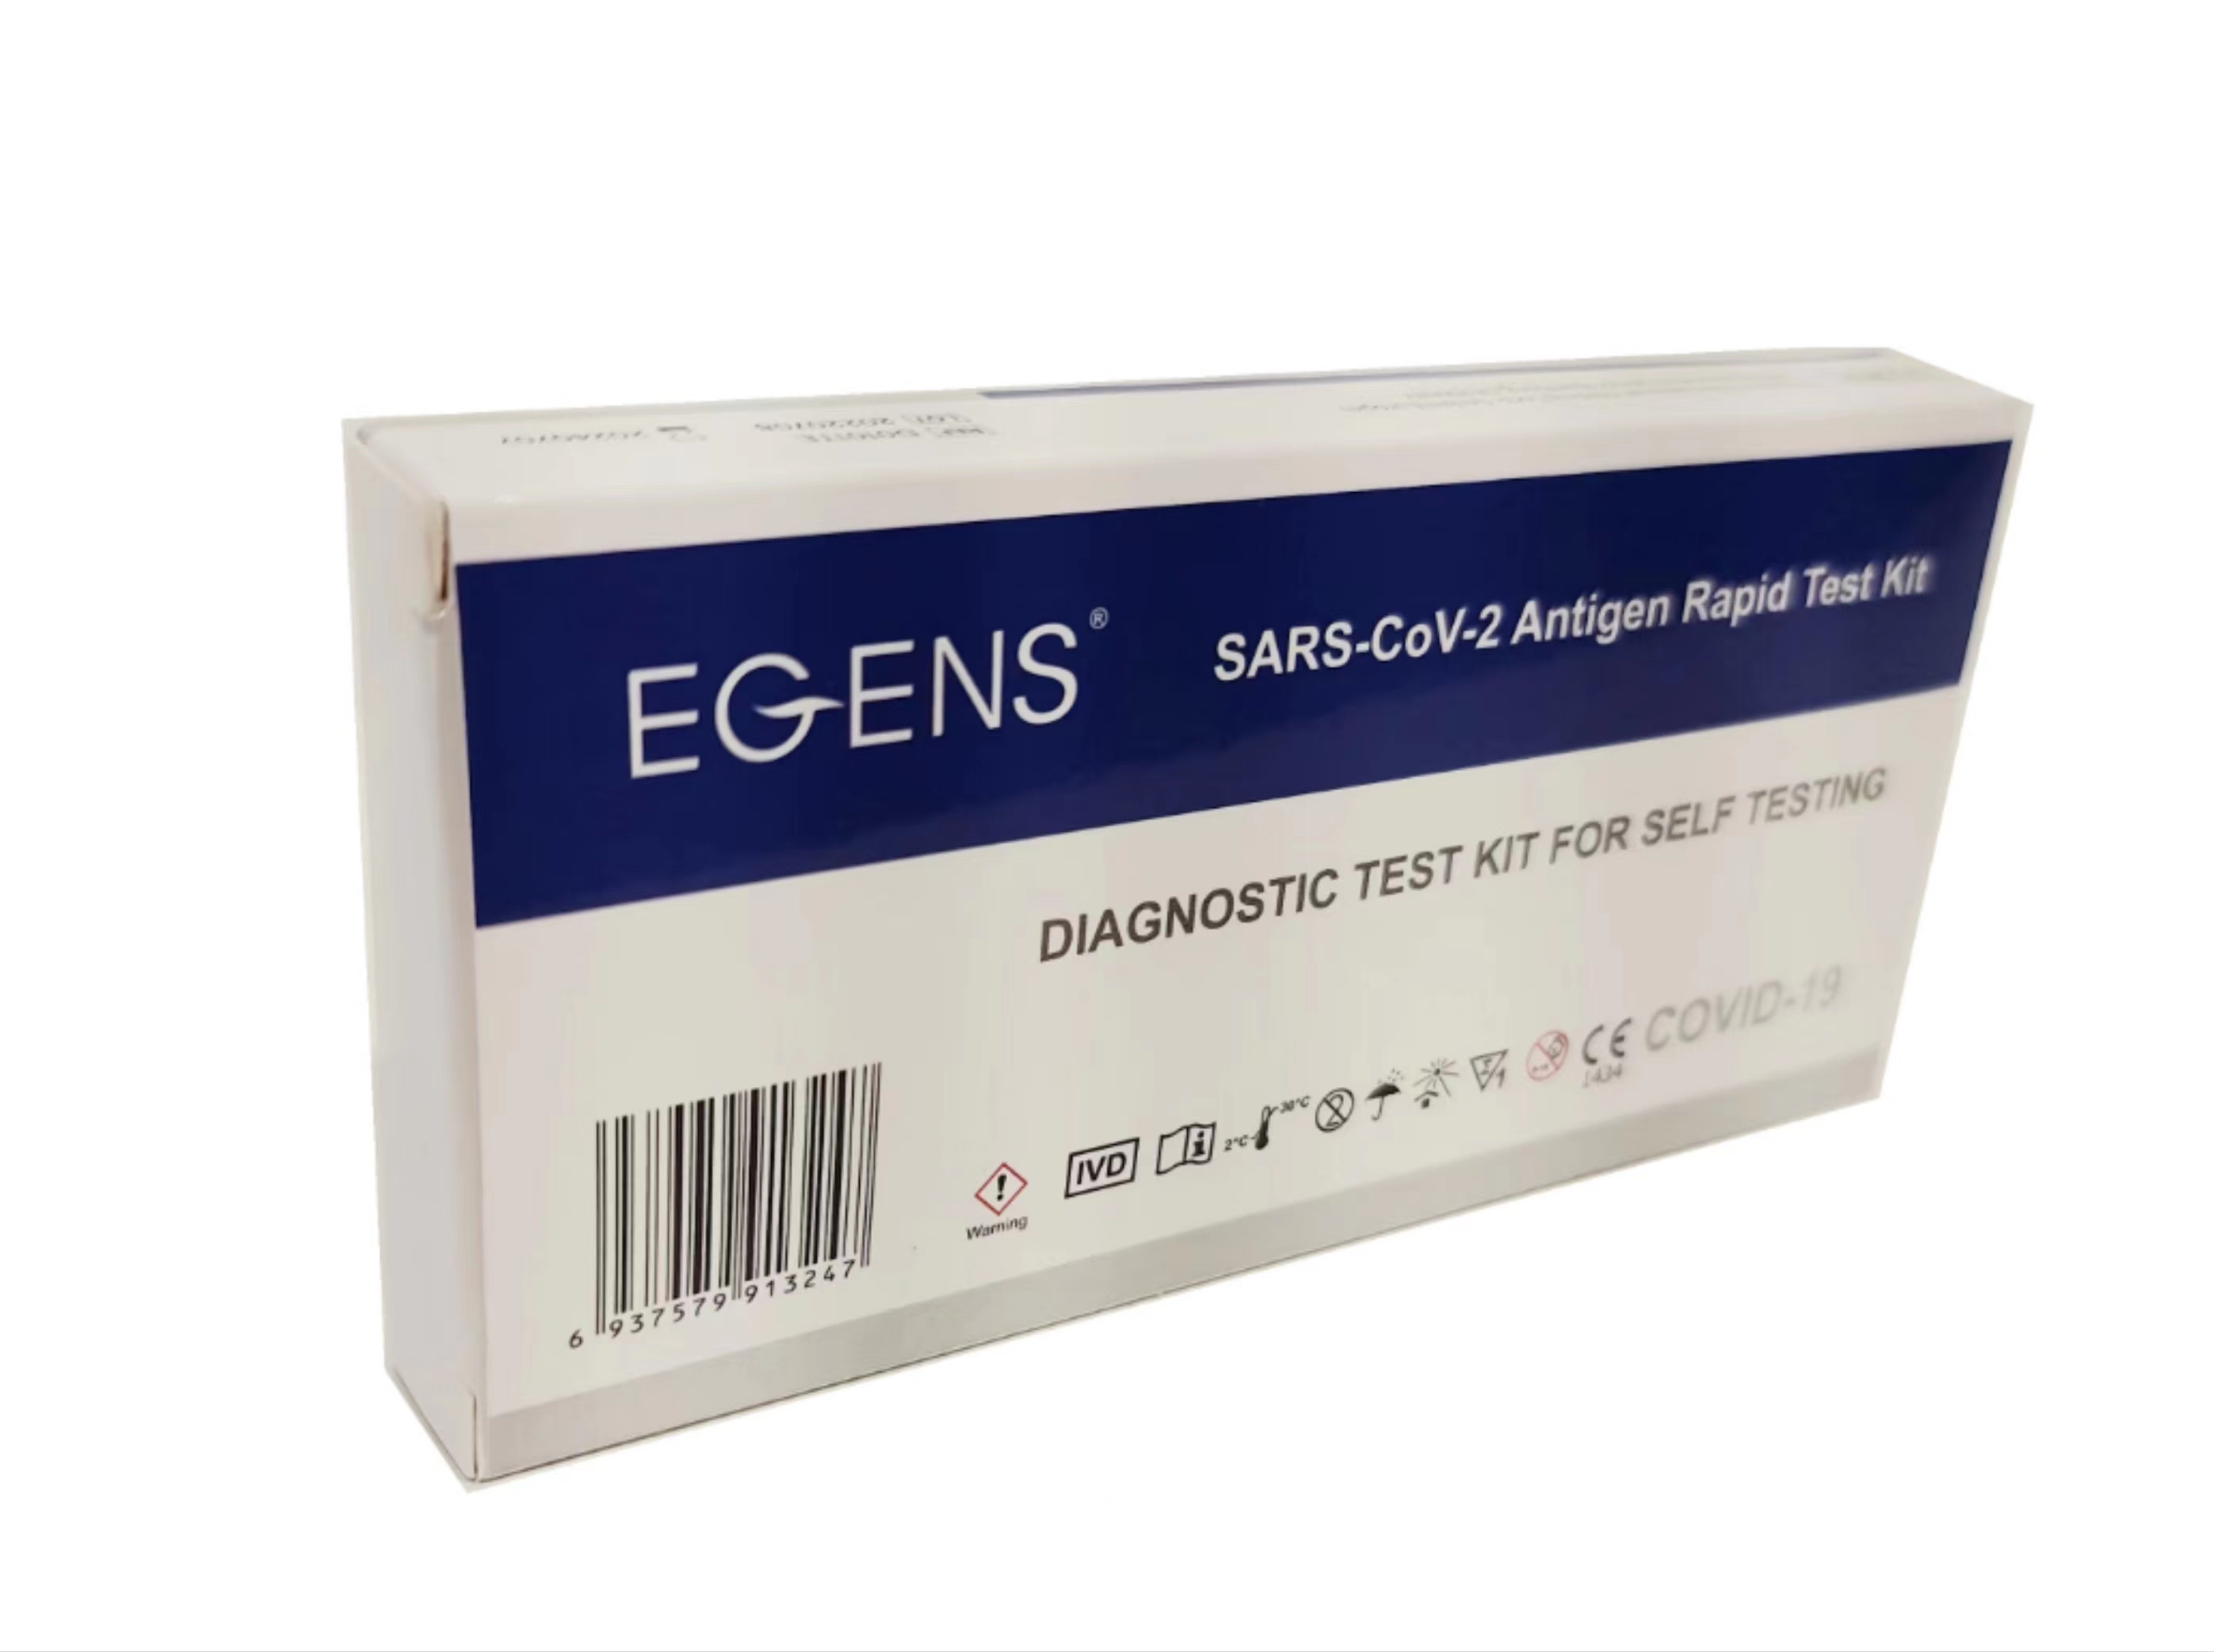      LAIEN Egens®  Antigen schnelltests NASAL mit CE1434,100 Tests(Einzelverpackung) mit 5 Sprache